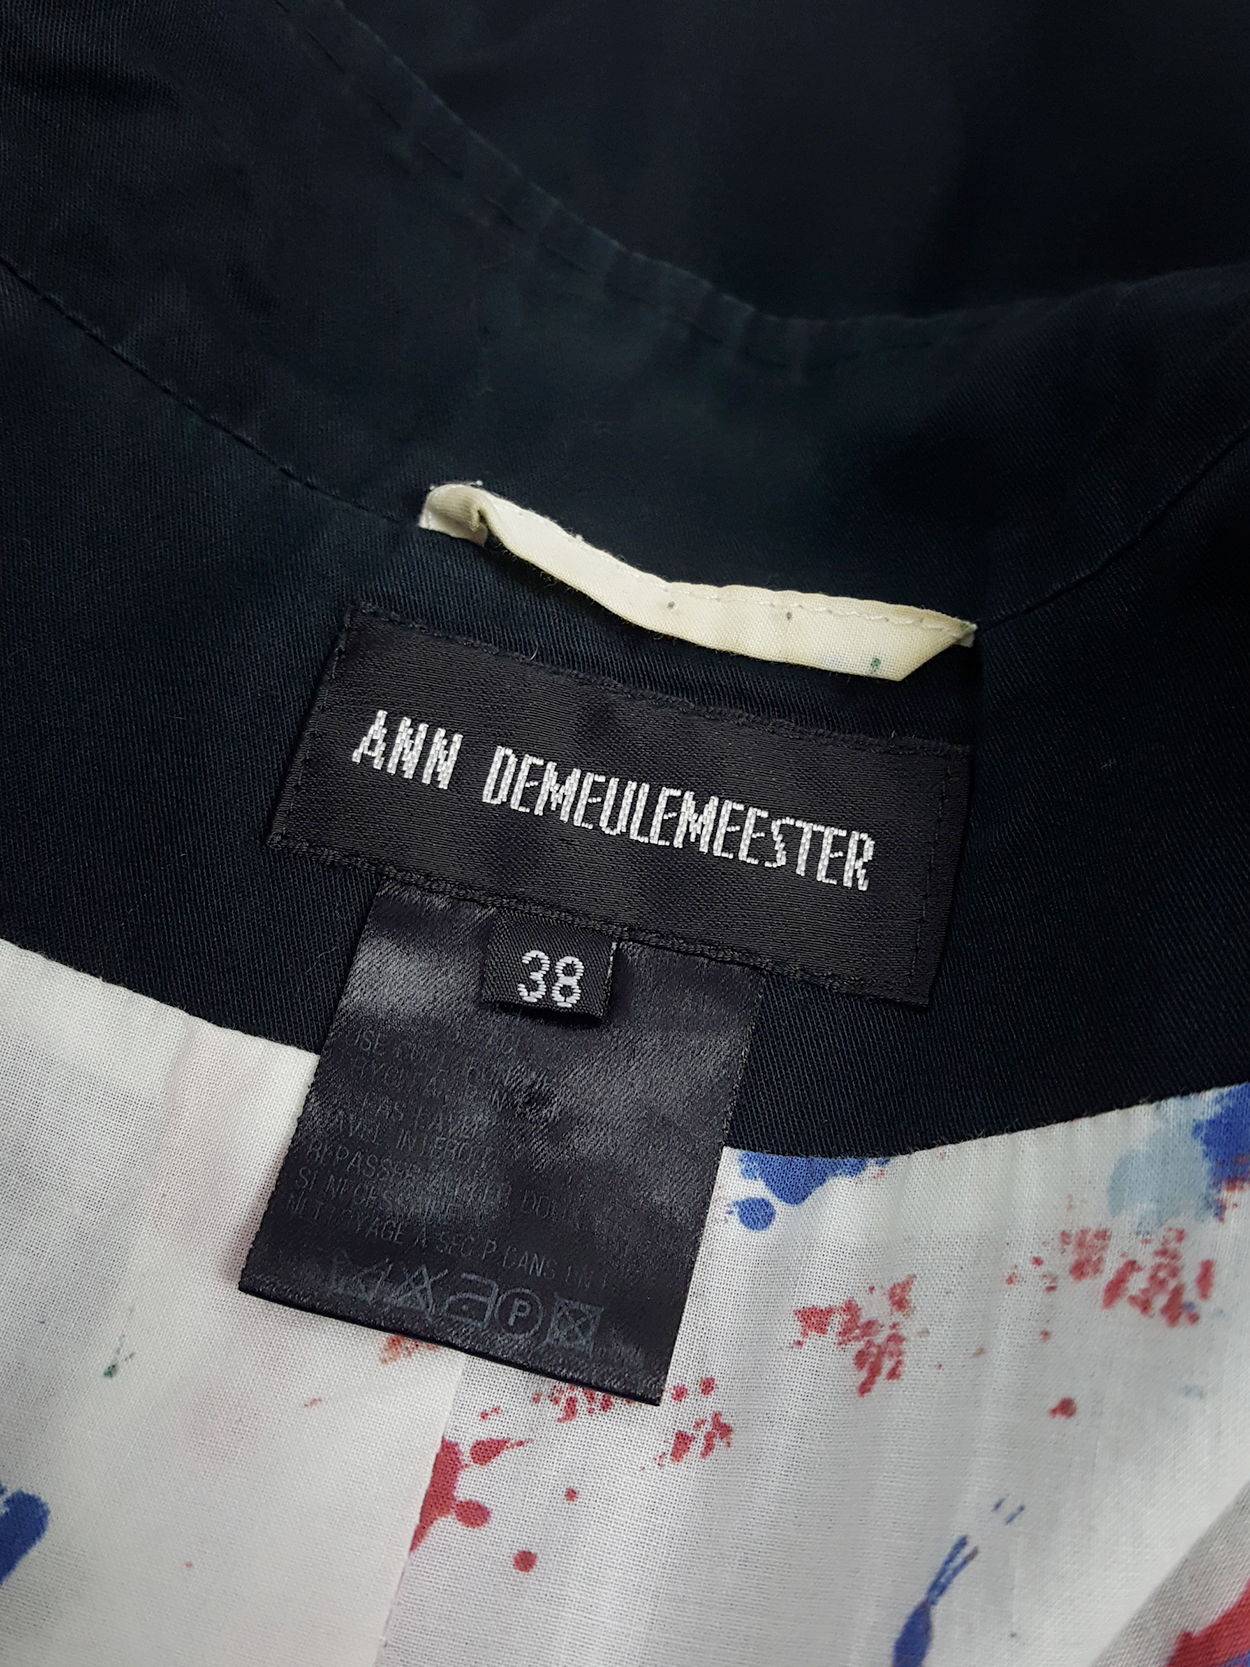 Ann Demeulemeester dark blue asymmetric blazer with buttons — spring ...